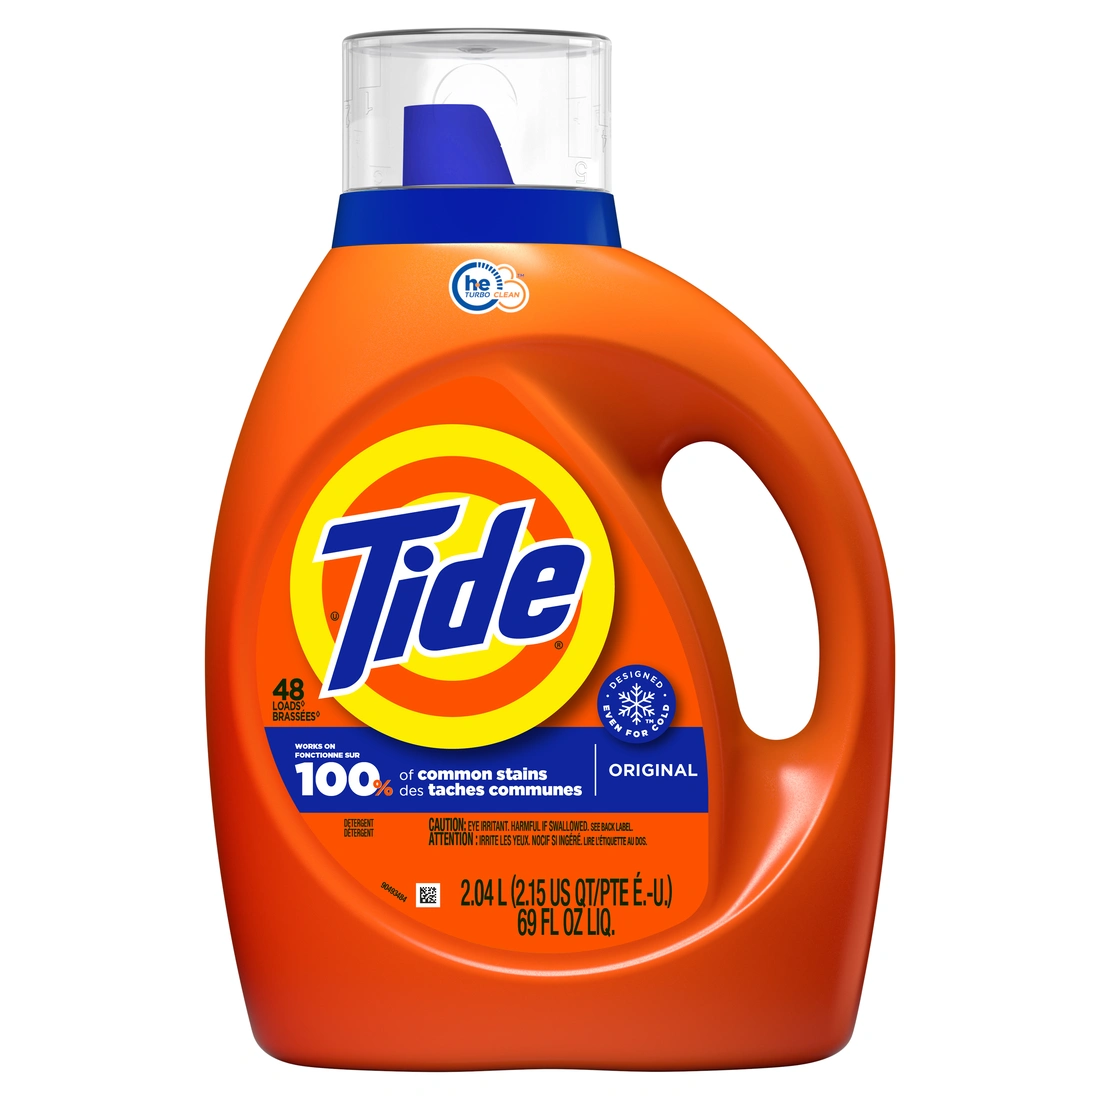 gain detergent logo